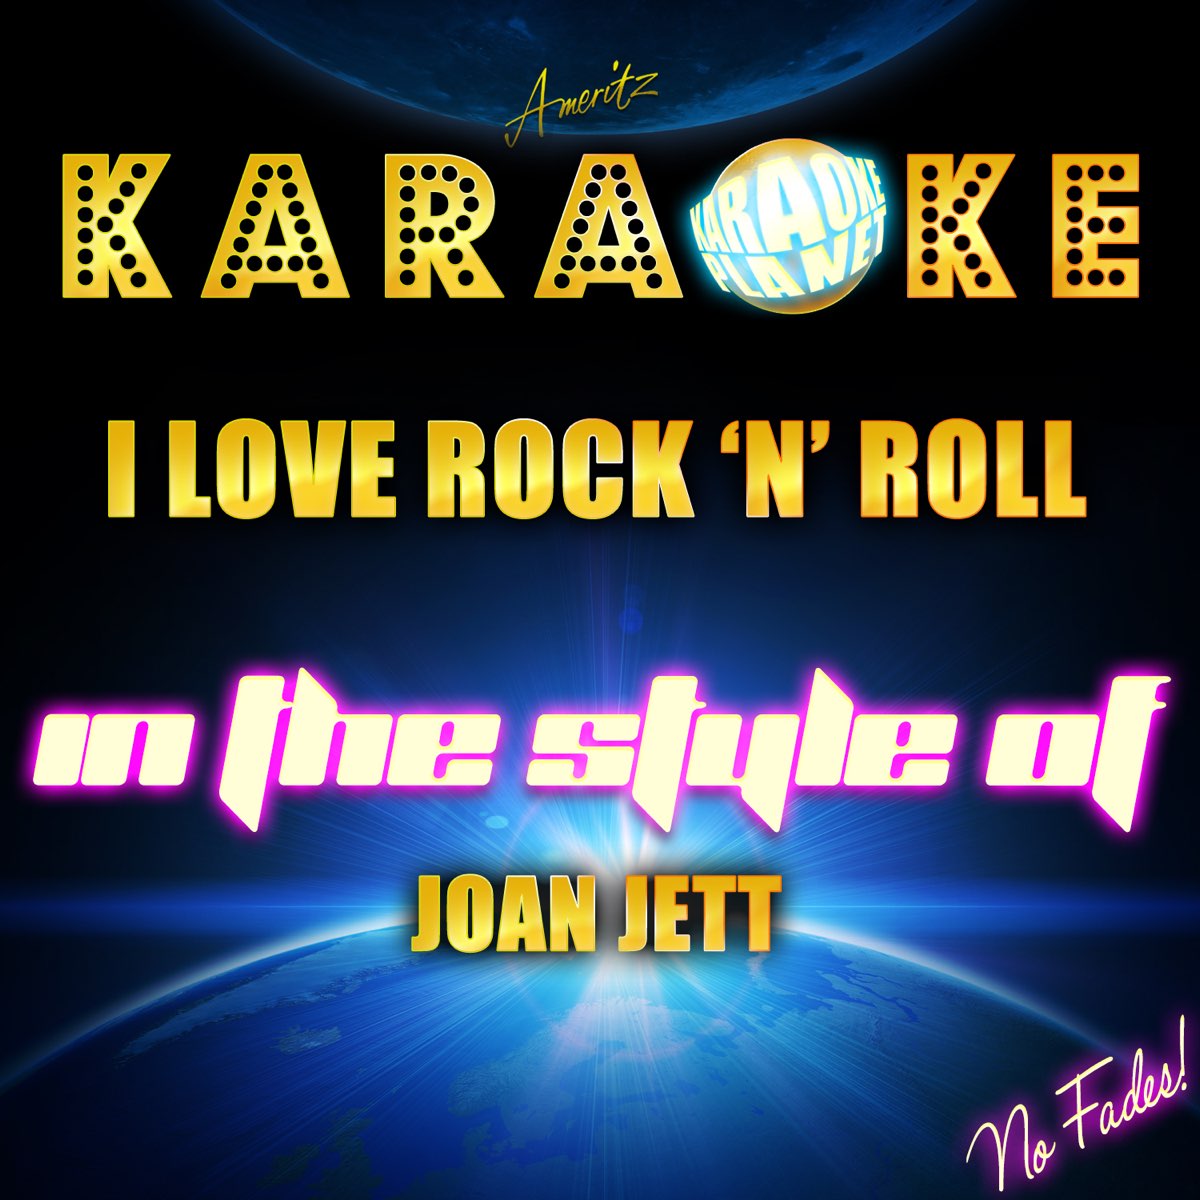 I Love Rock 'N' Roll (In the Style of Joan Jett) [Karaoke Version] - Single  by Ameritz Karaoke Planet on Apple Music